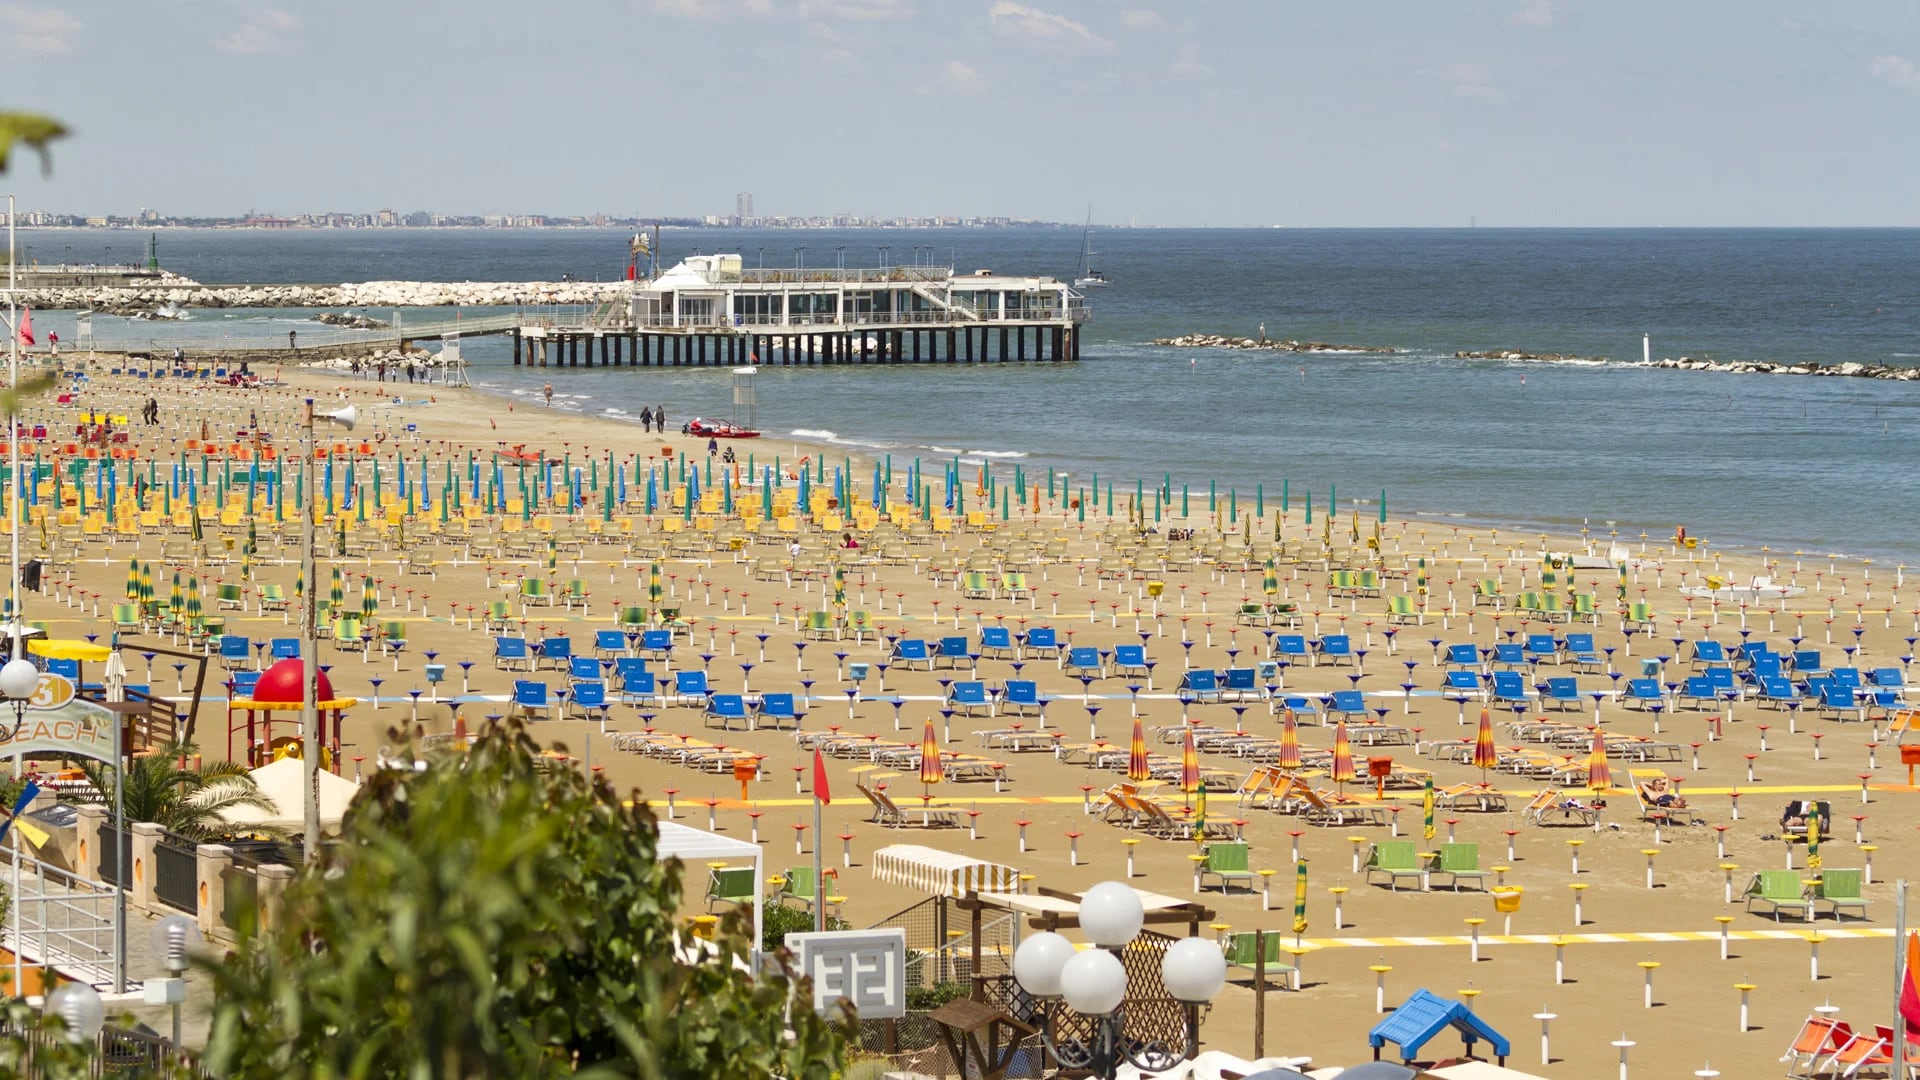 Sus playas son muy atractivas para el turismo local e internacional (Shutterstock)